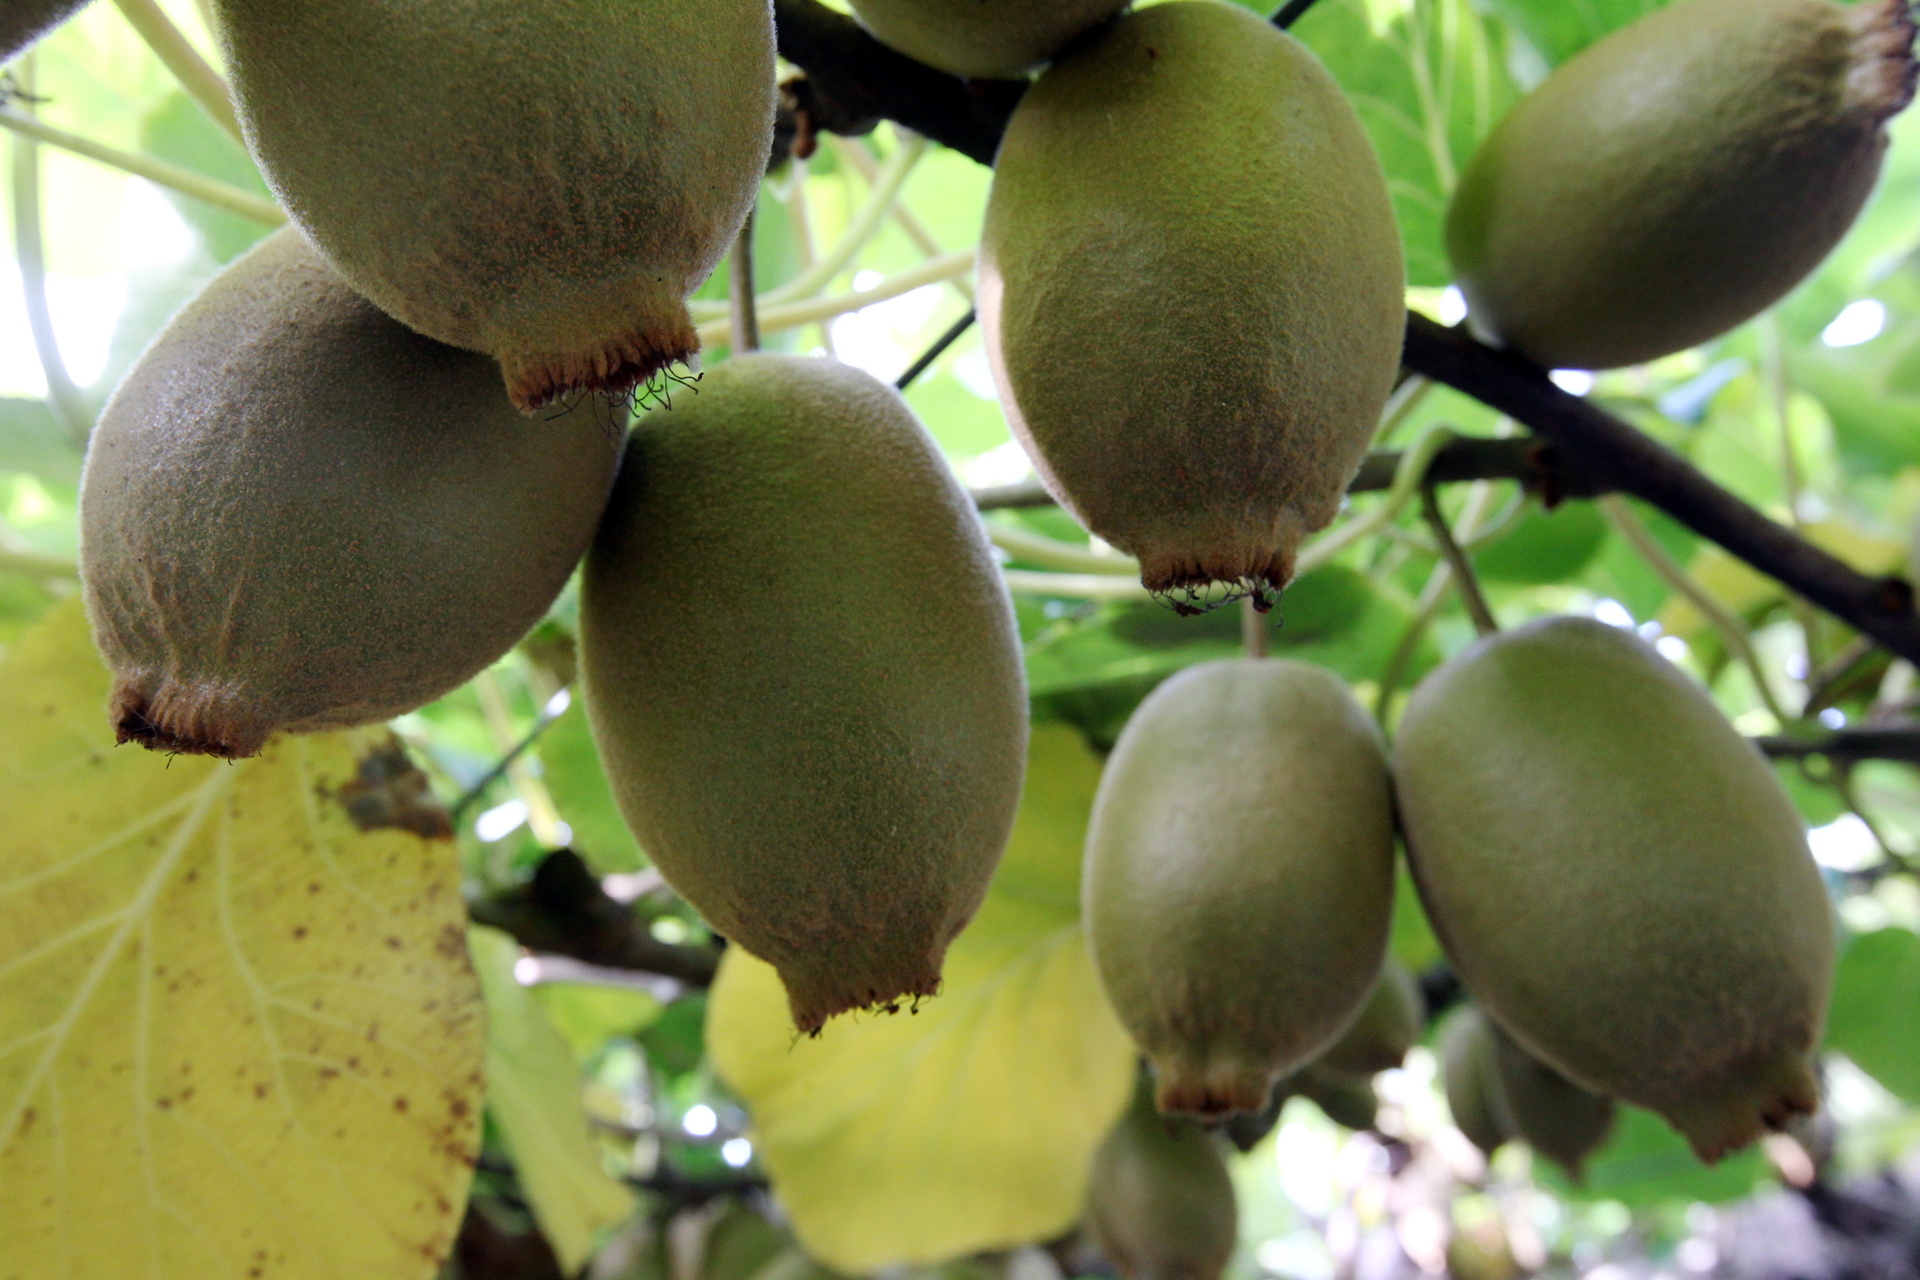 Organic Kiwifruit from New Zealand on the Rise